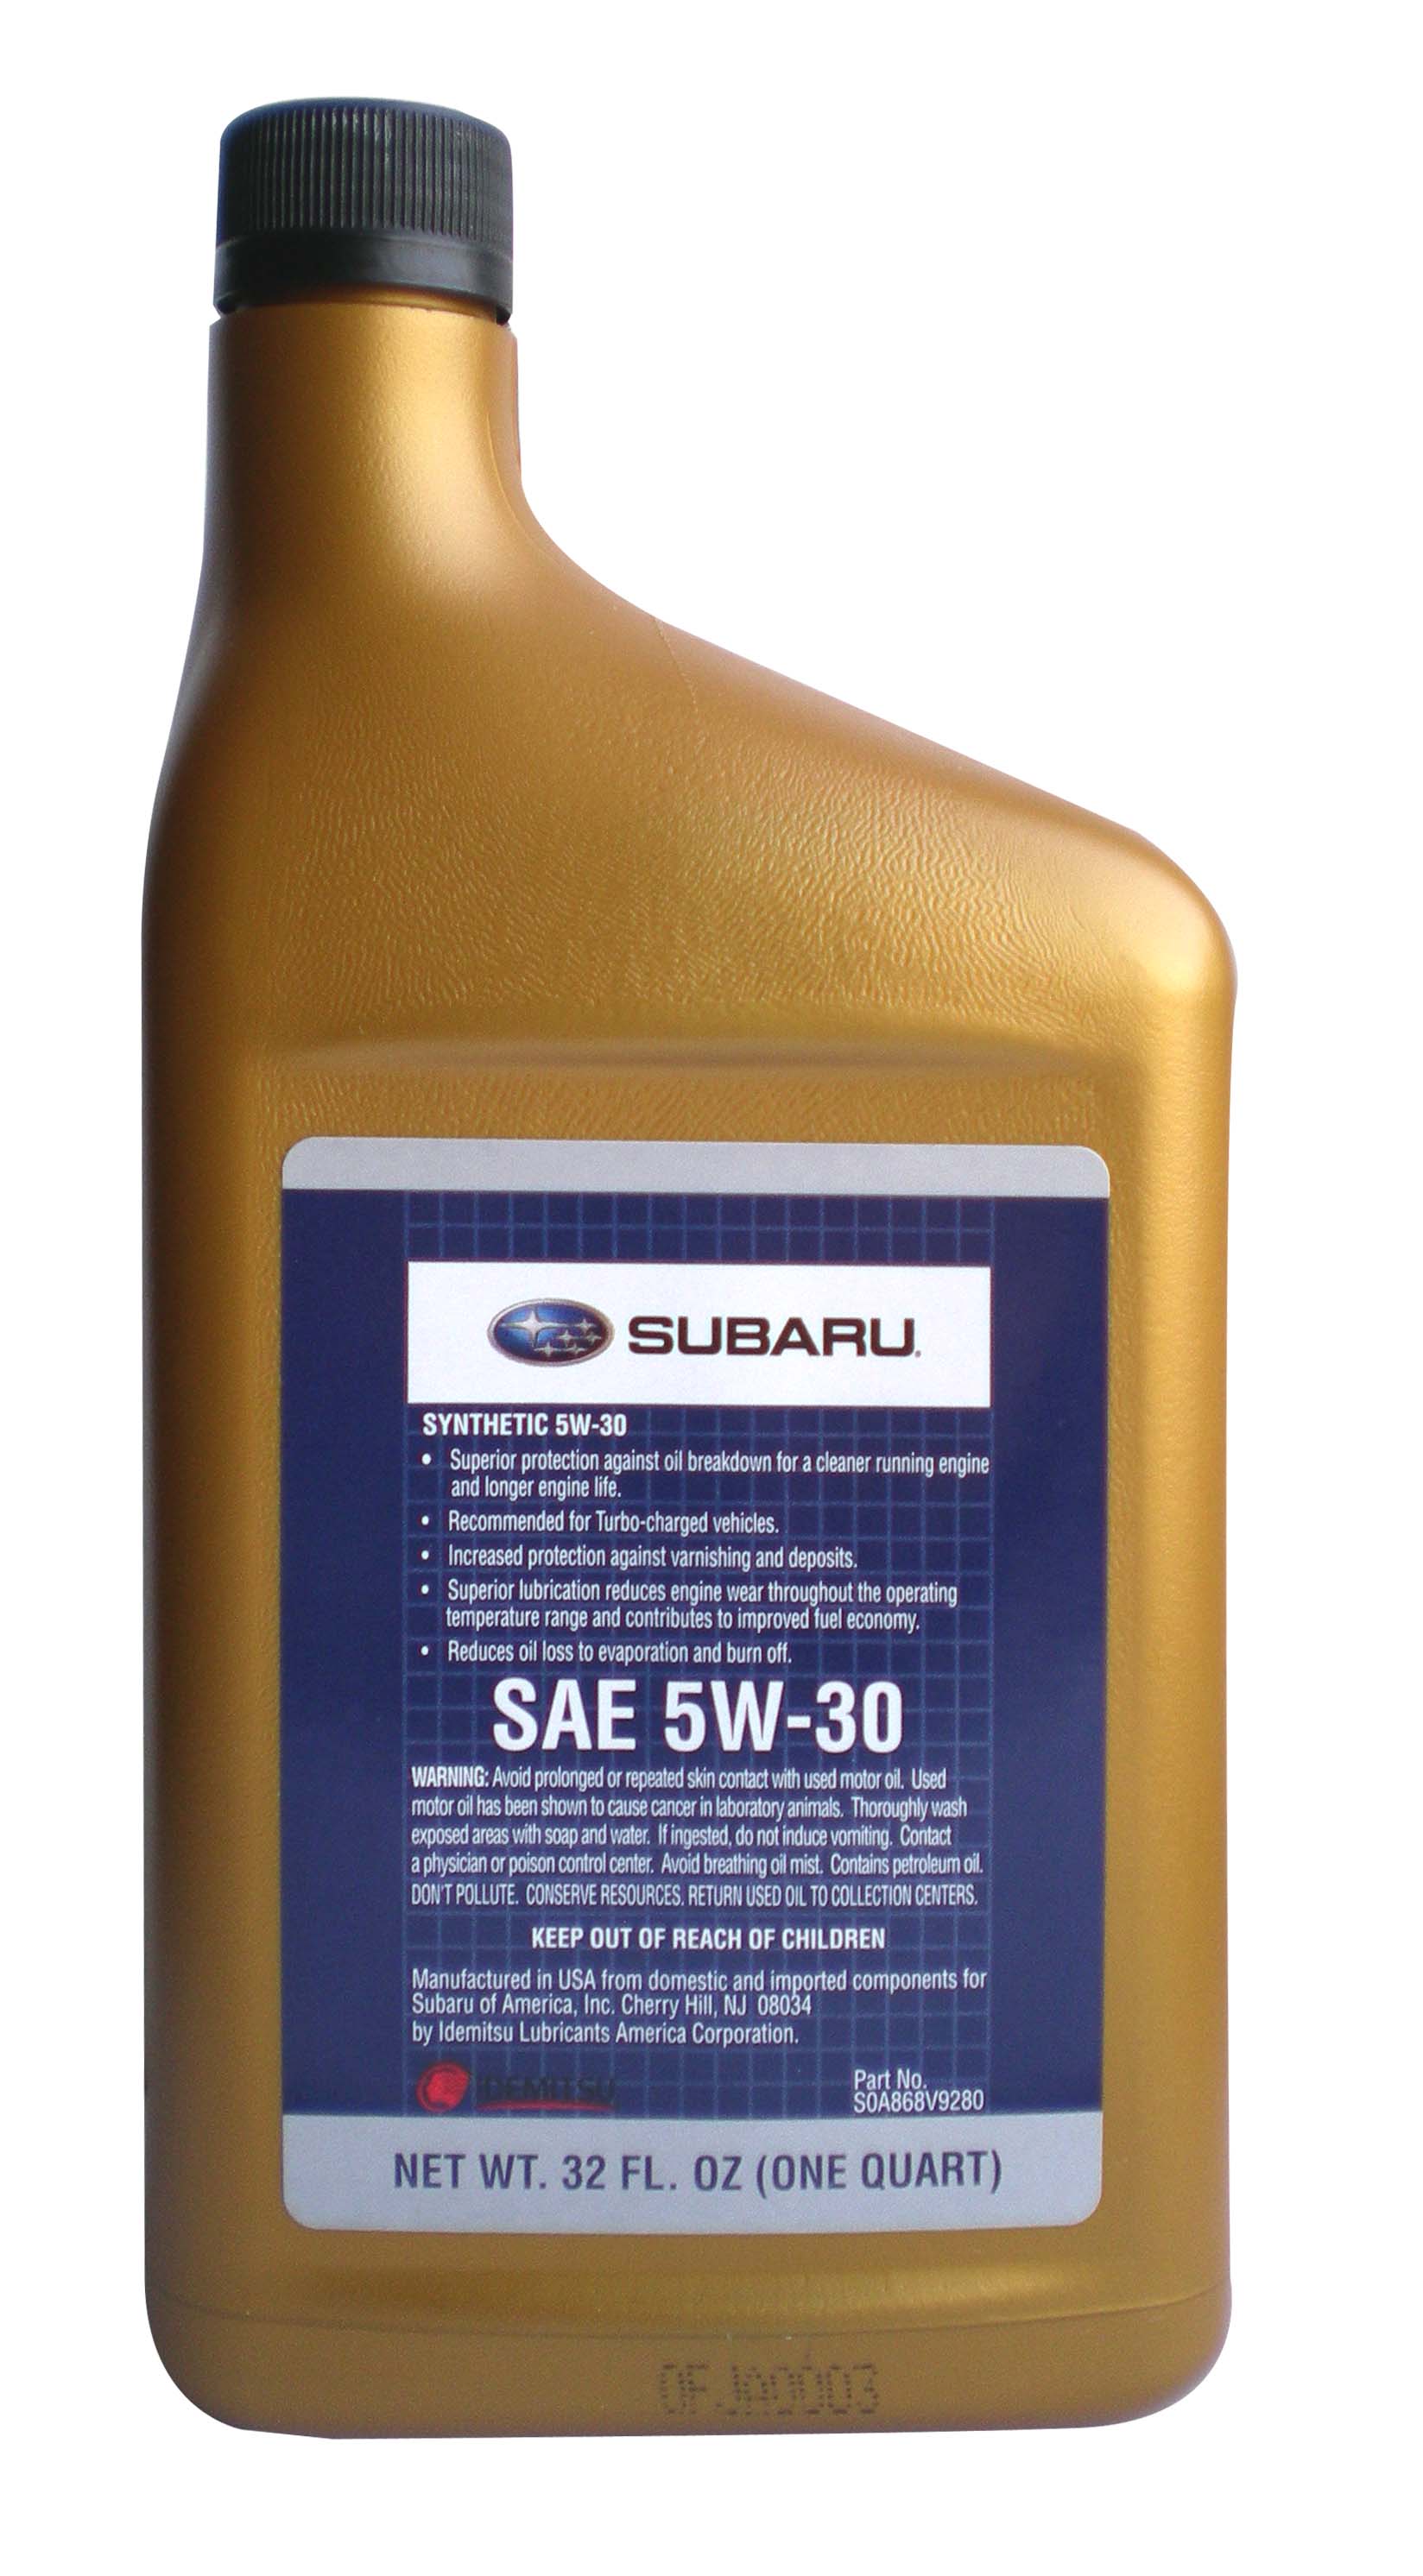 Купить запчасть SUBARU - SOA868V9280 Motor Oil 5W-30